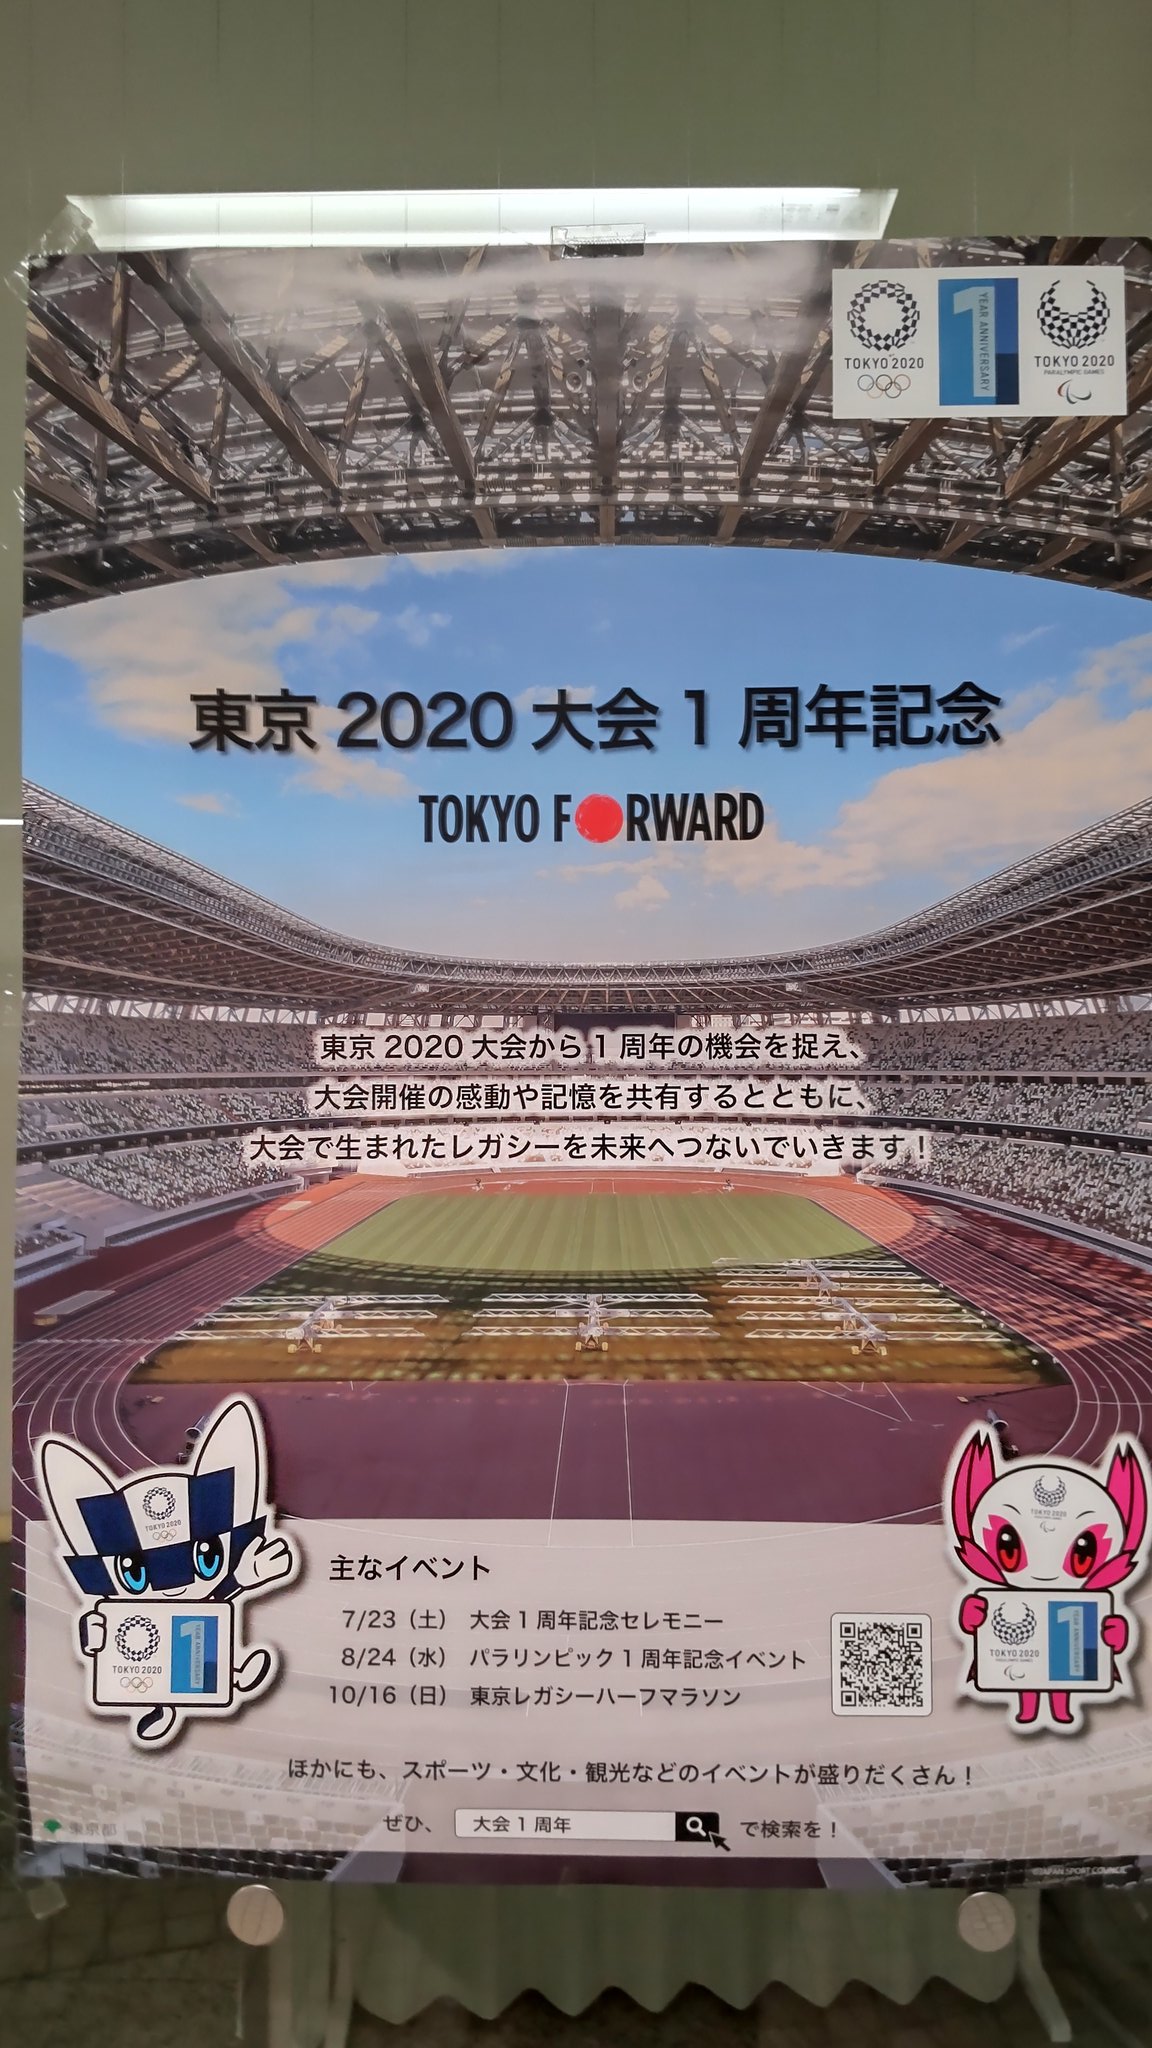 東京オリンピック2020 招致 ポスター なでしこジャパン